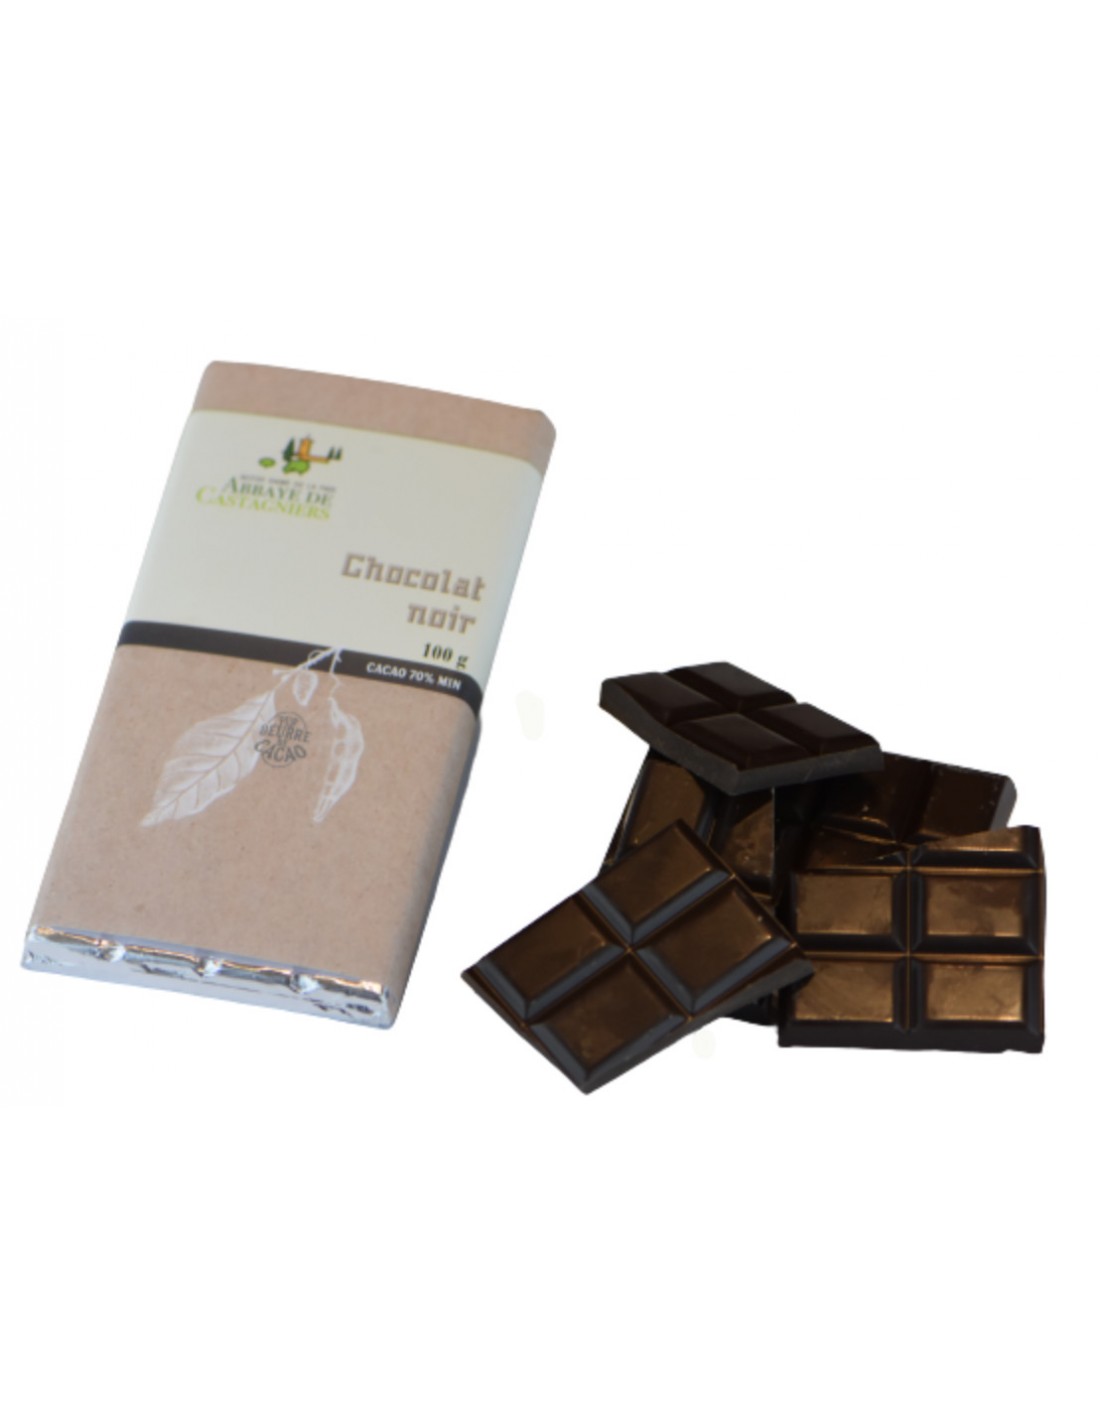 Chocolat artisanal Assortiment Noir 70% des Chevaliers 185g à 7,00